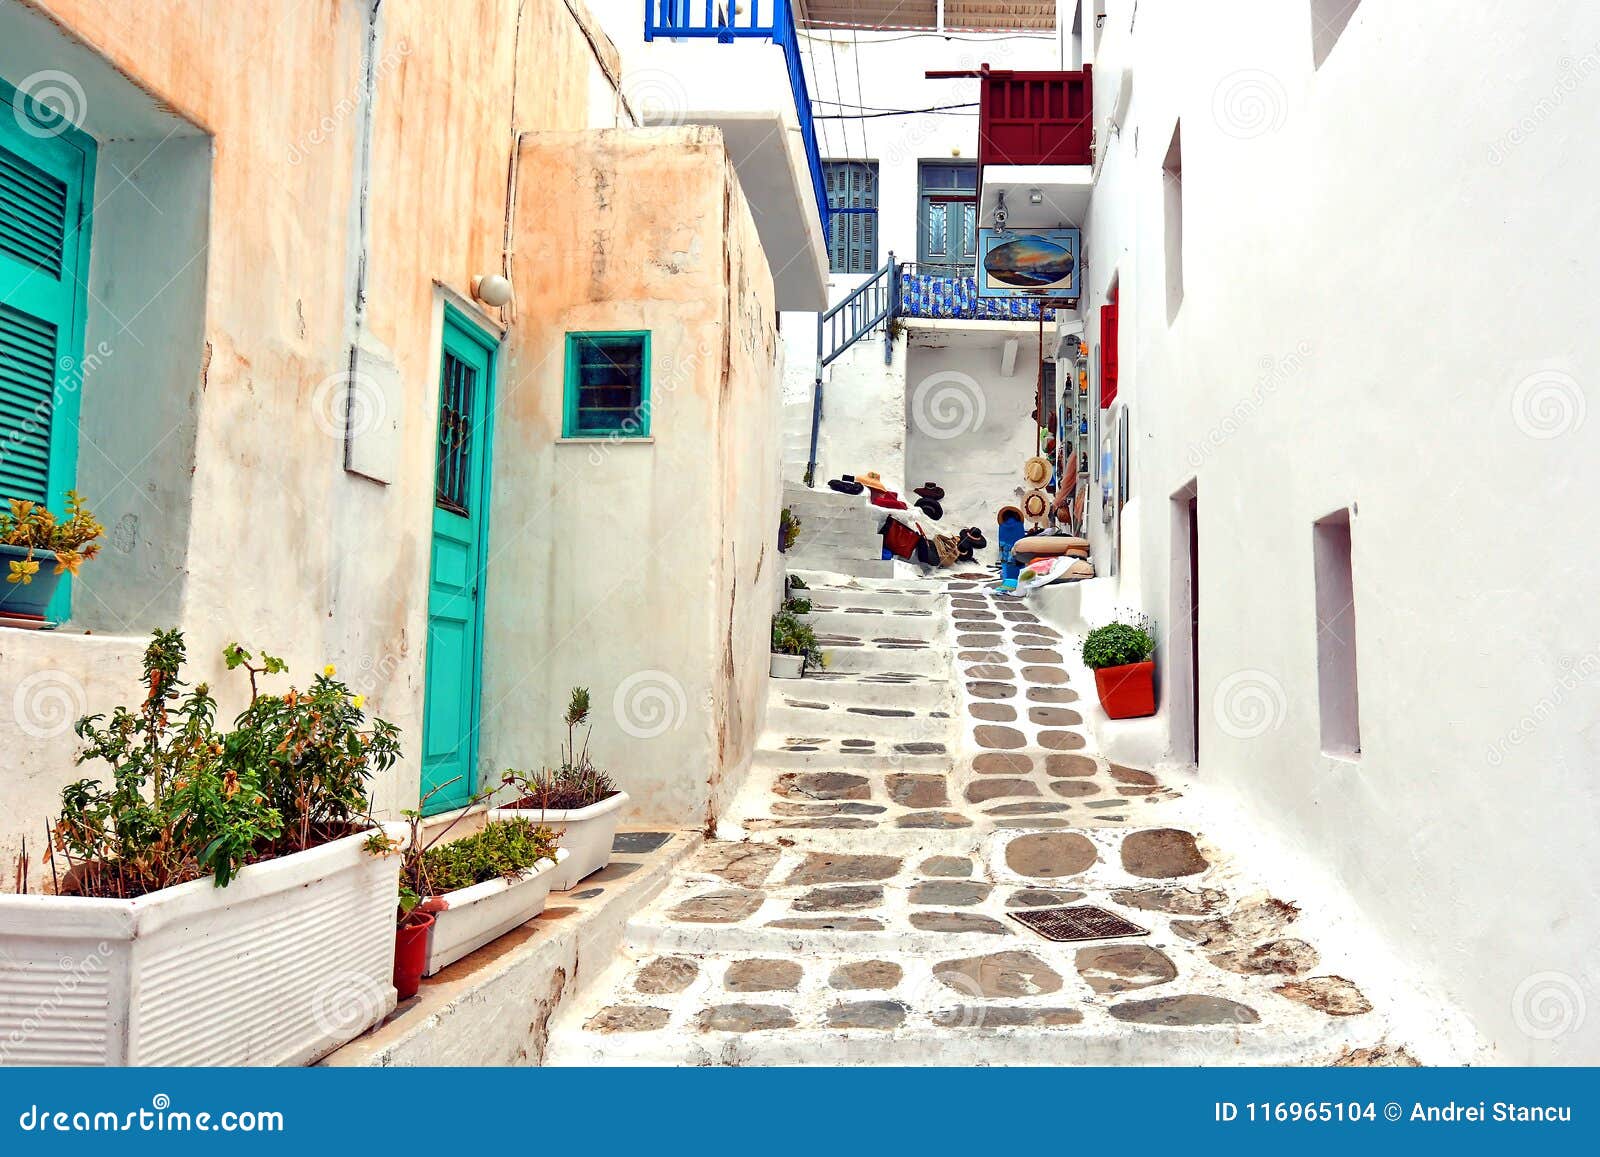 street in mykonos, greece